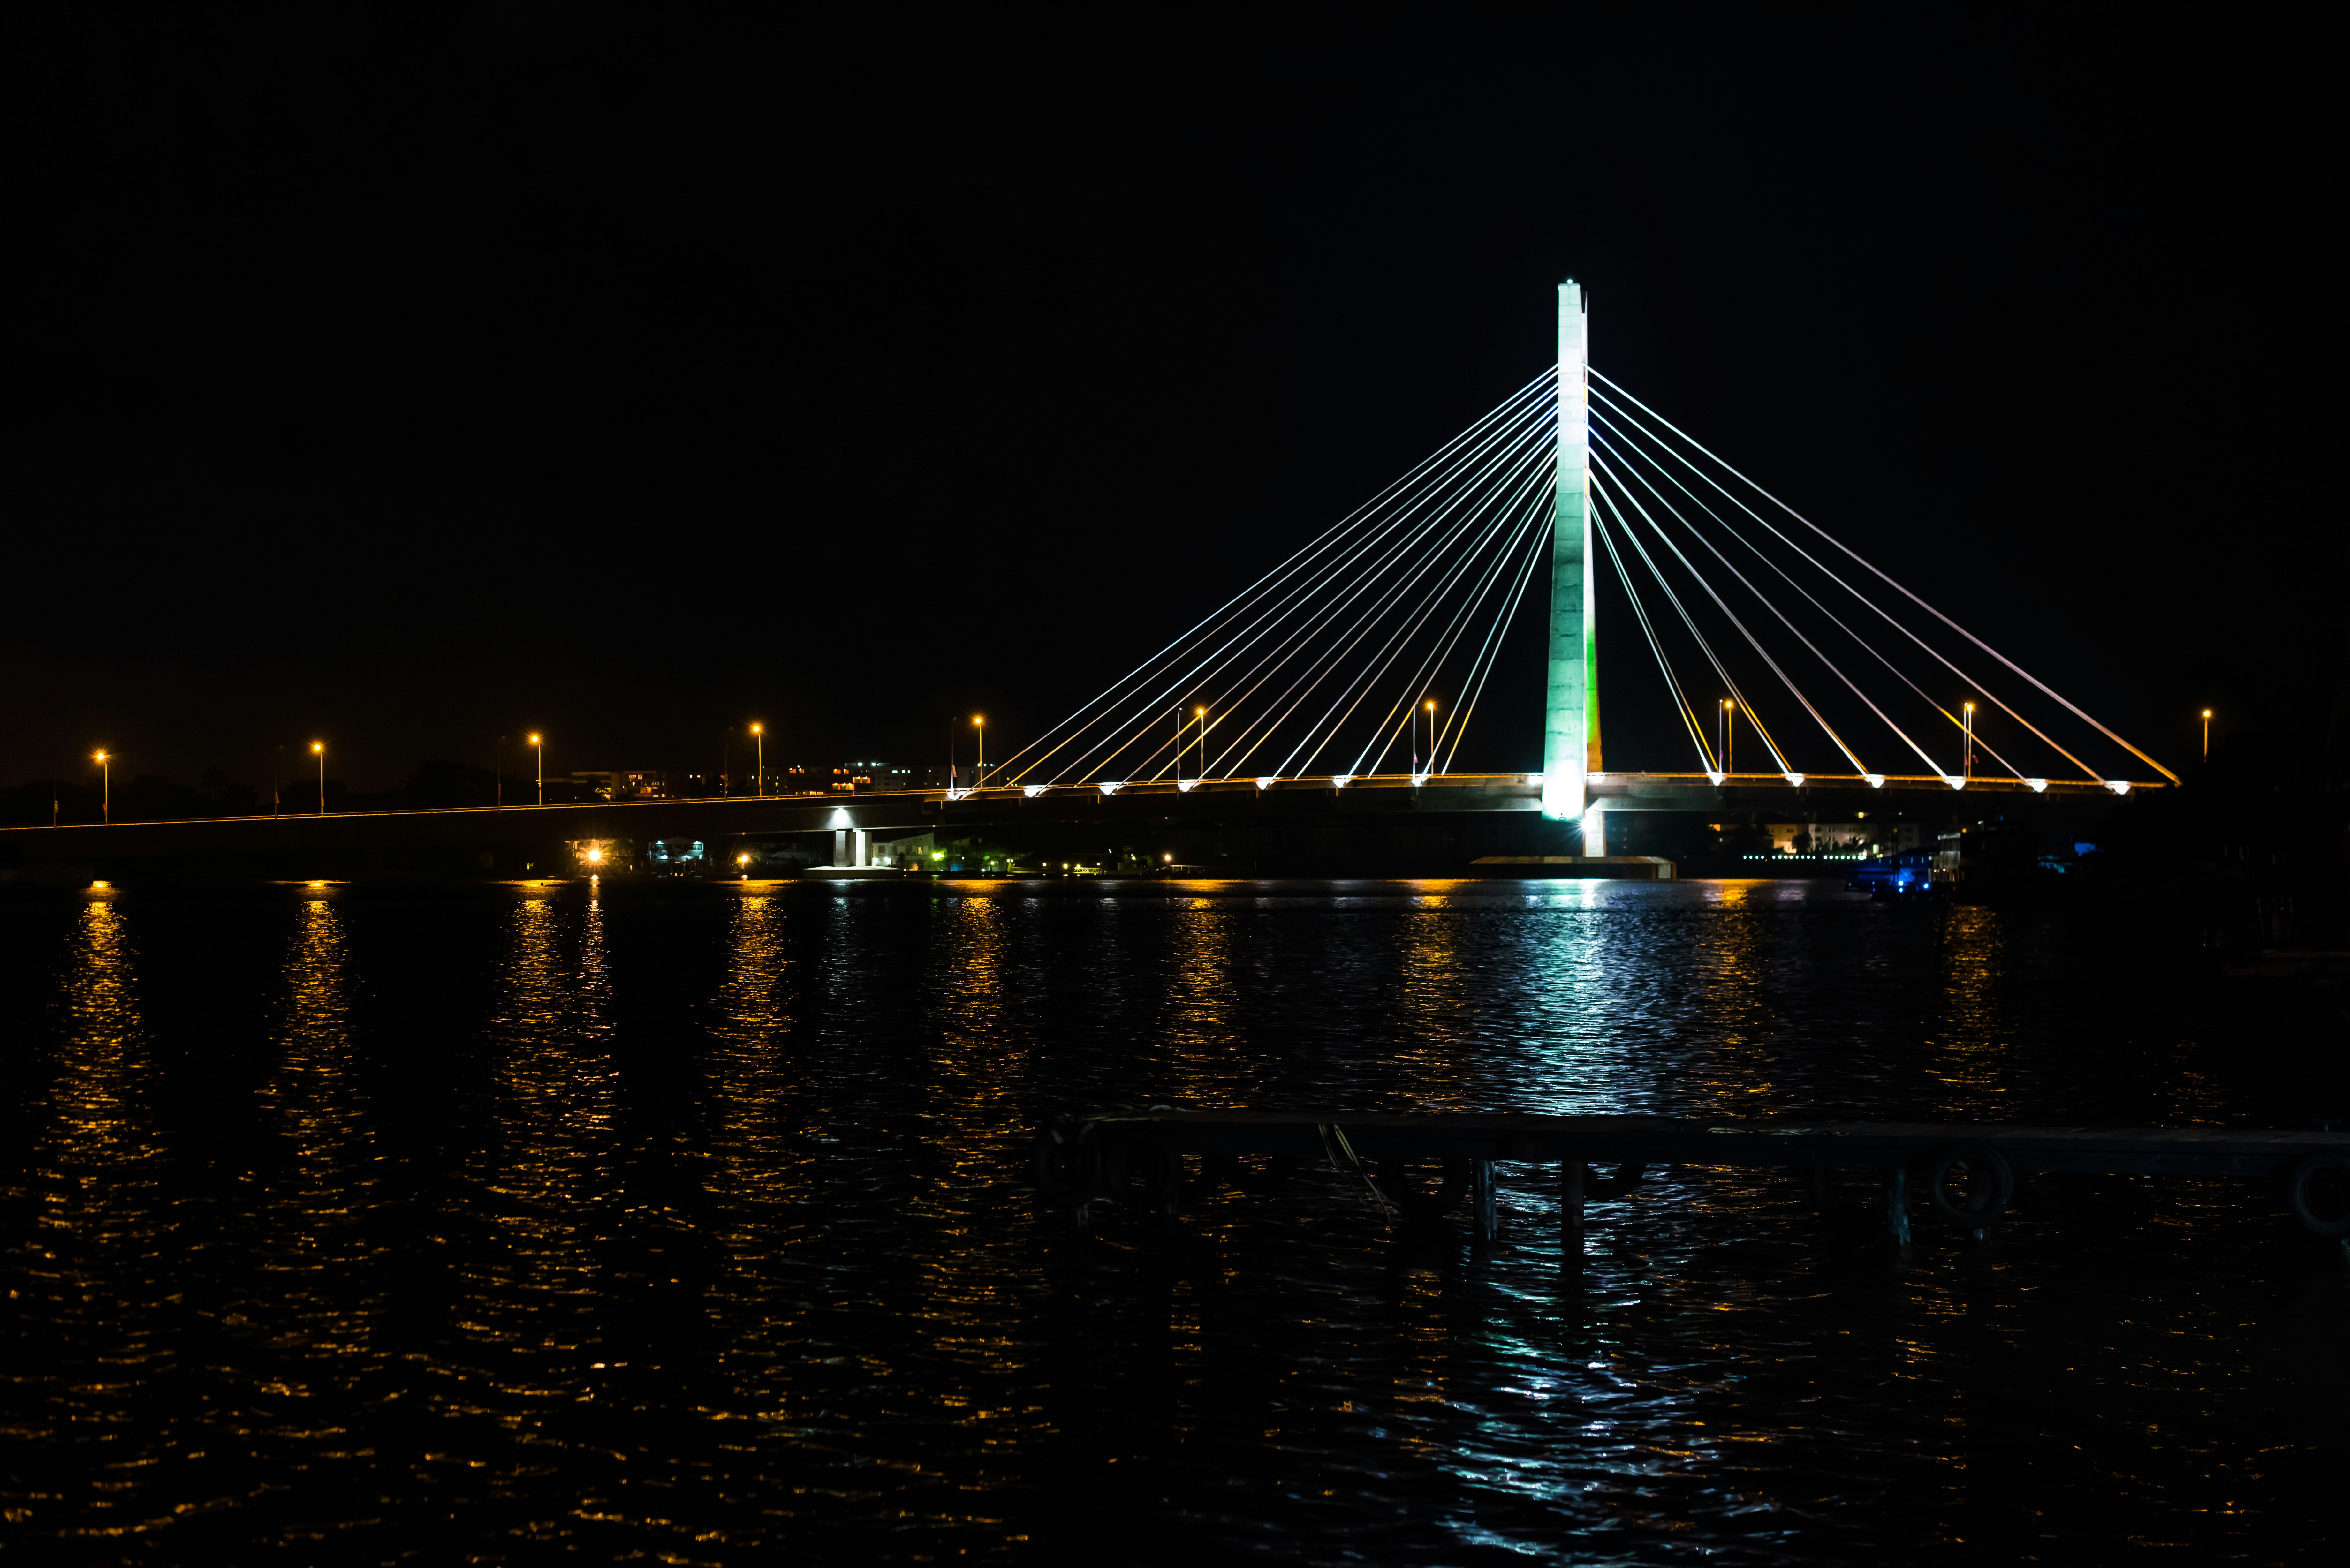 Lekki Ikoyi Link Bridge Lagos Nigeria